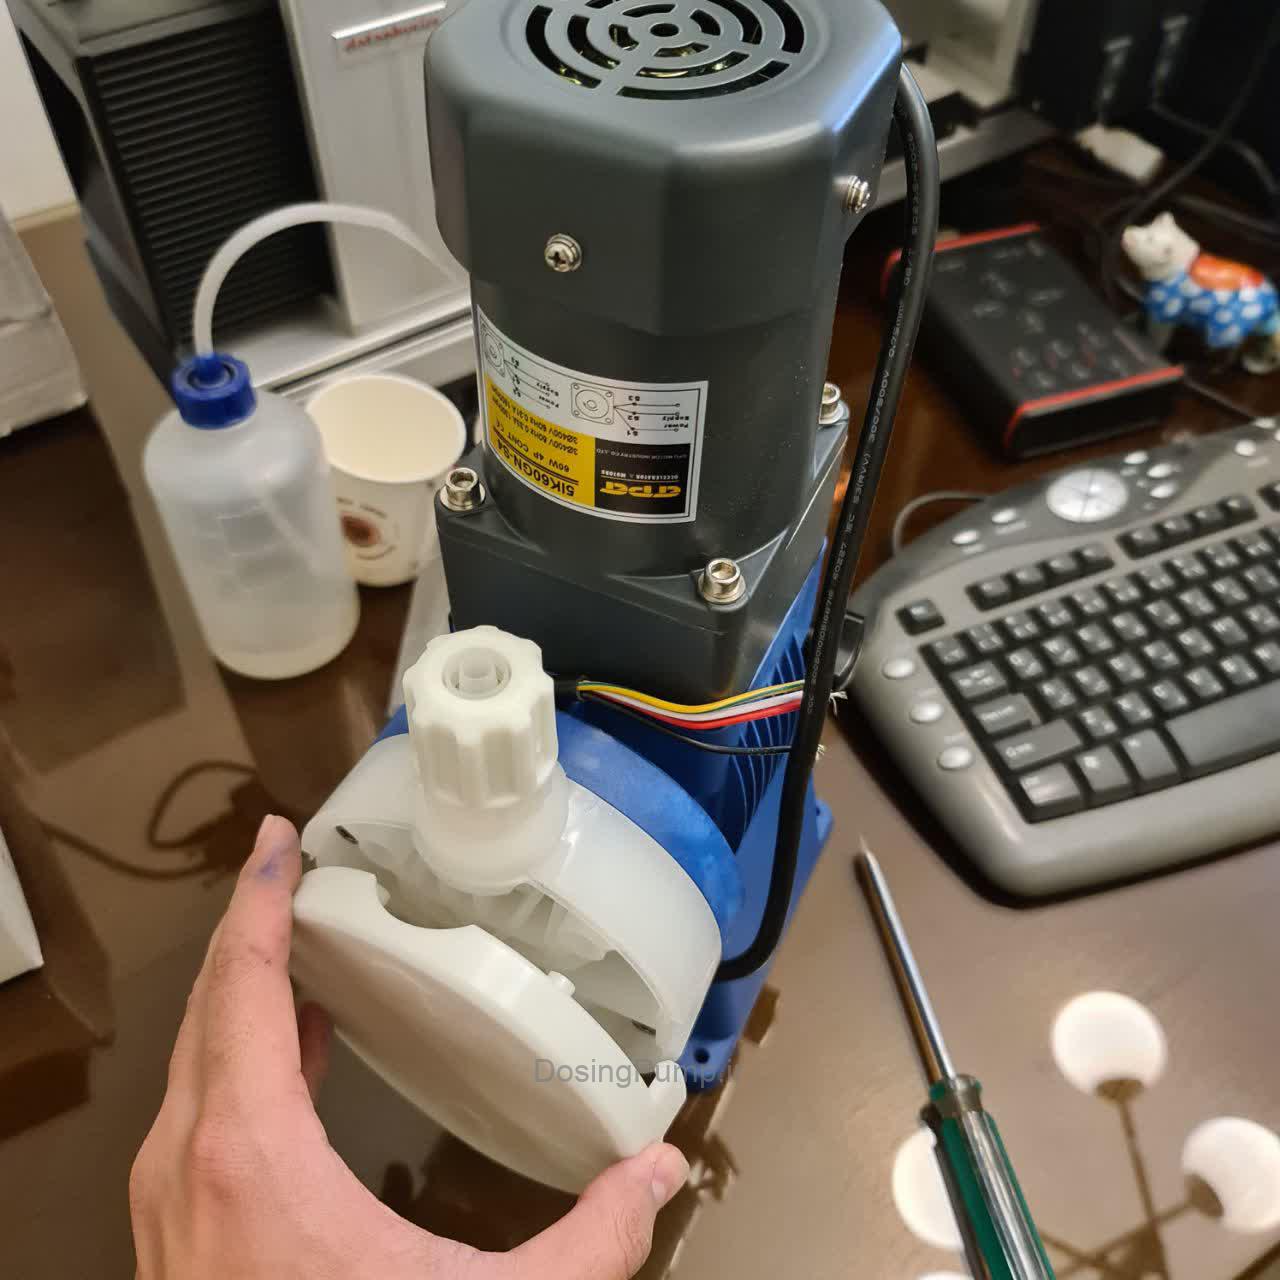 Dosing pump 60 liters per hour 5 Bar Injecta TM07, Dosing Pump